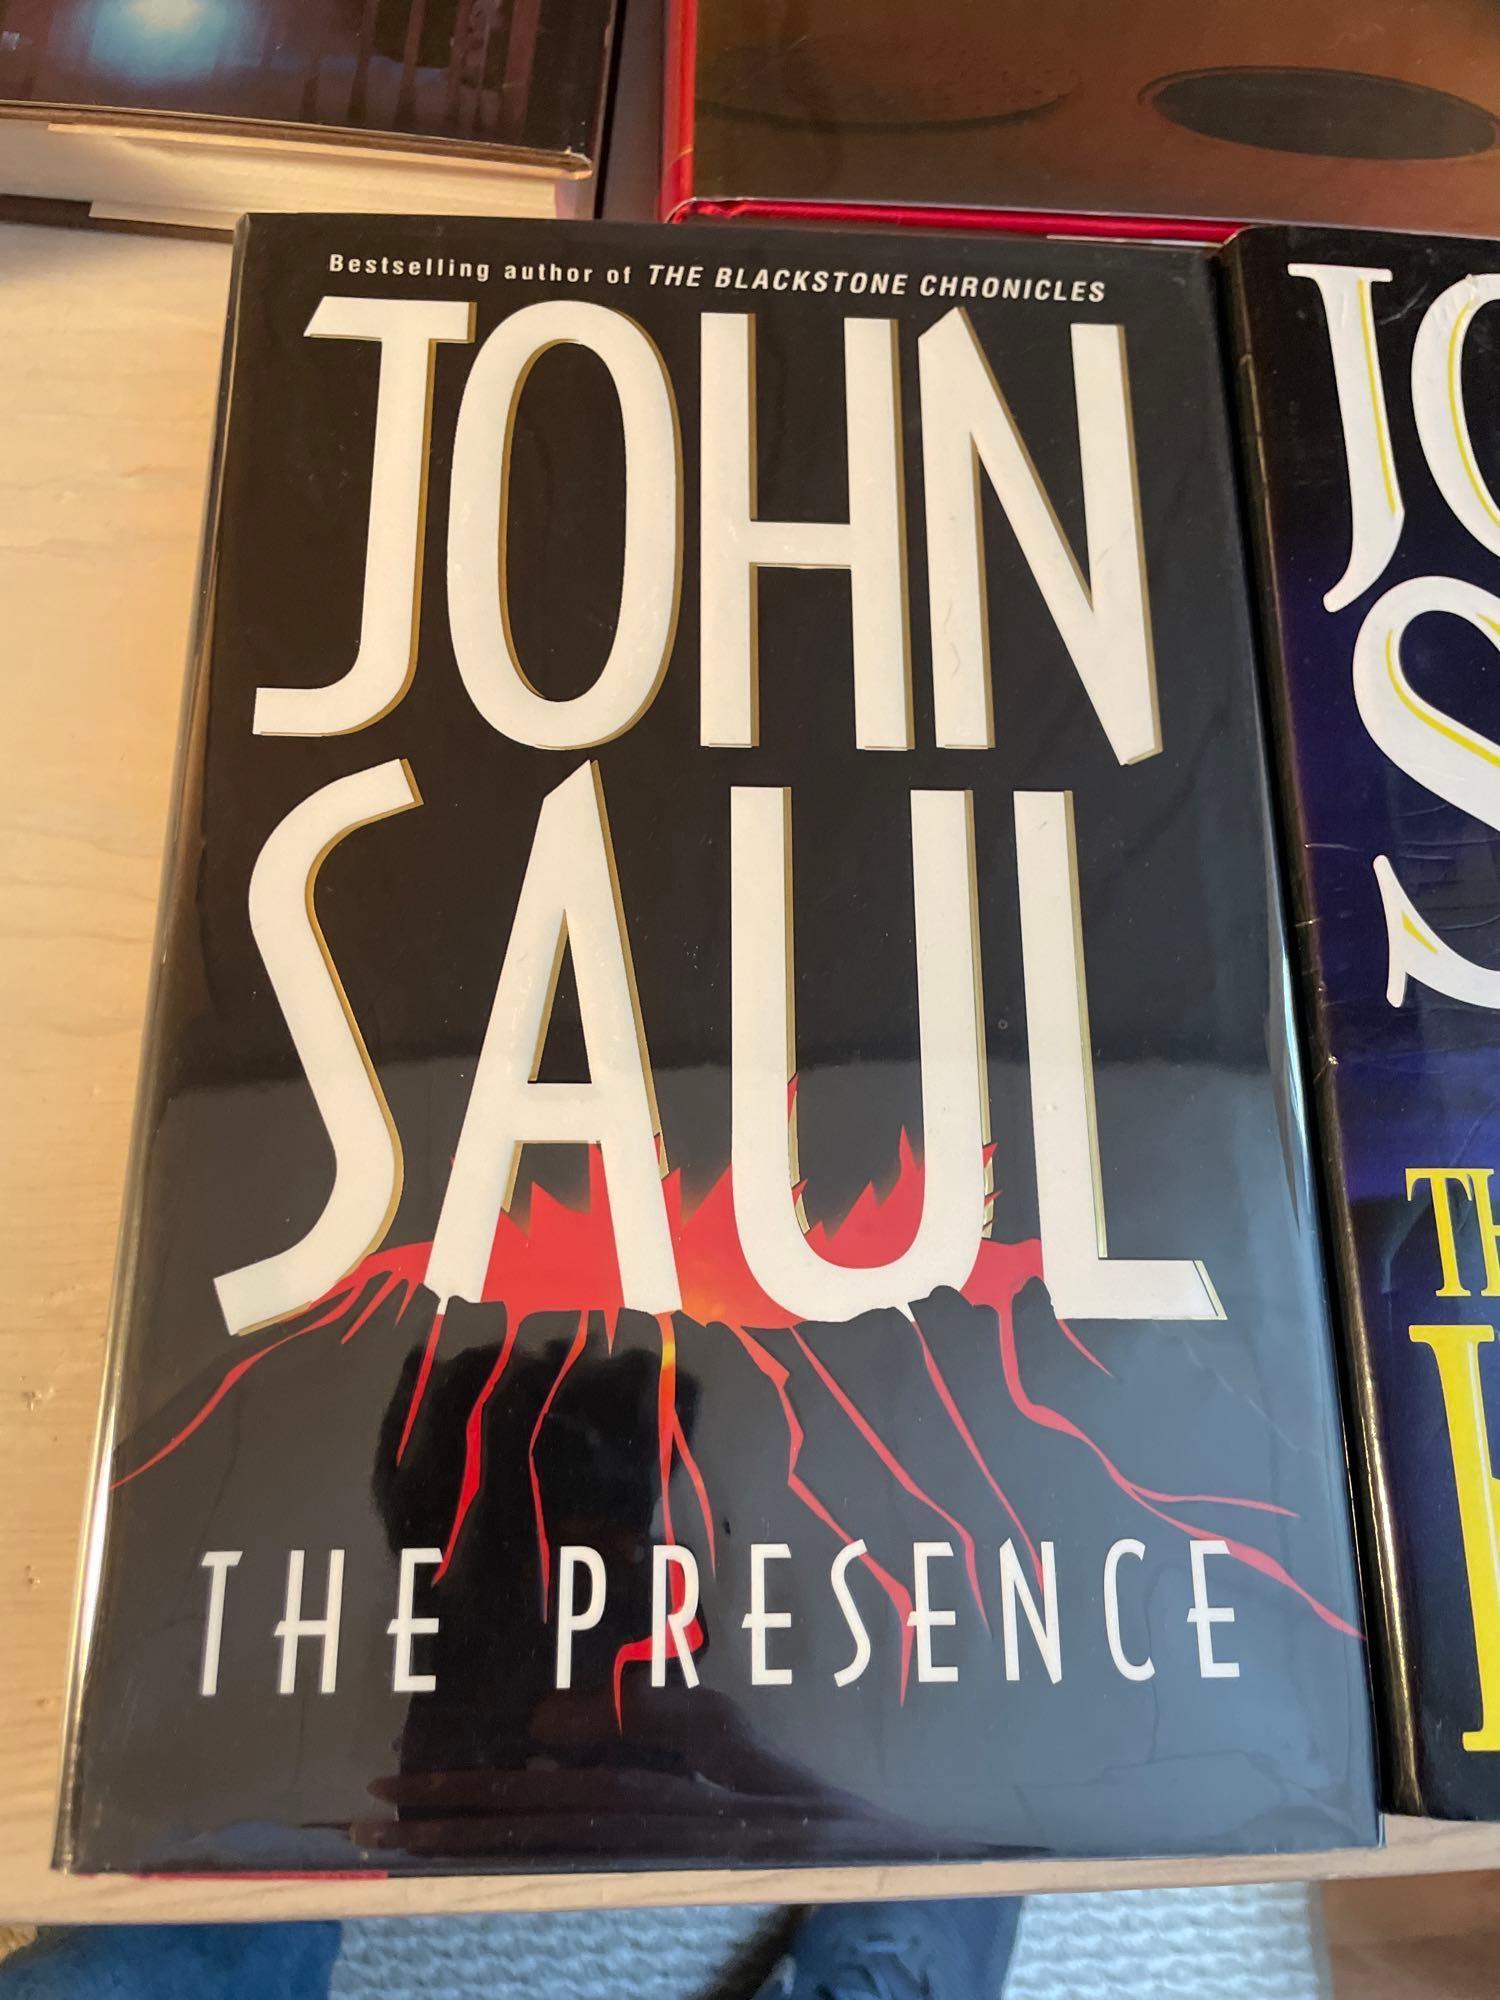 John Saul HC Books (7)